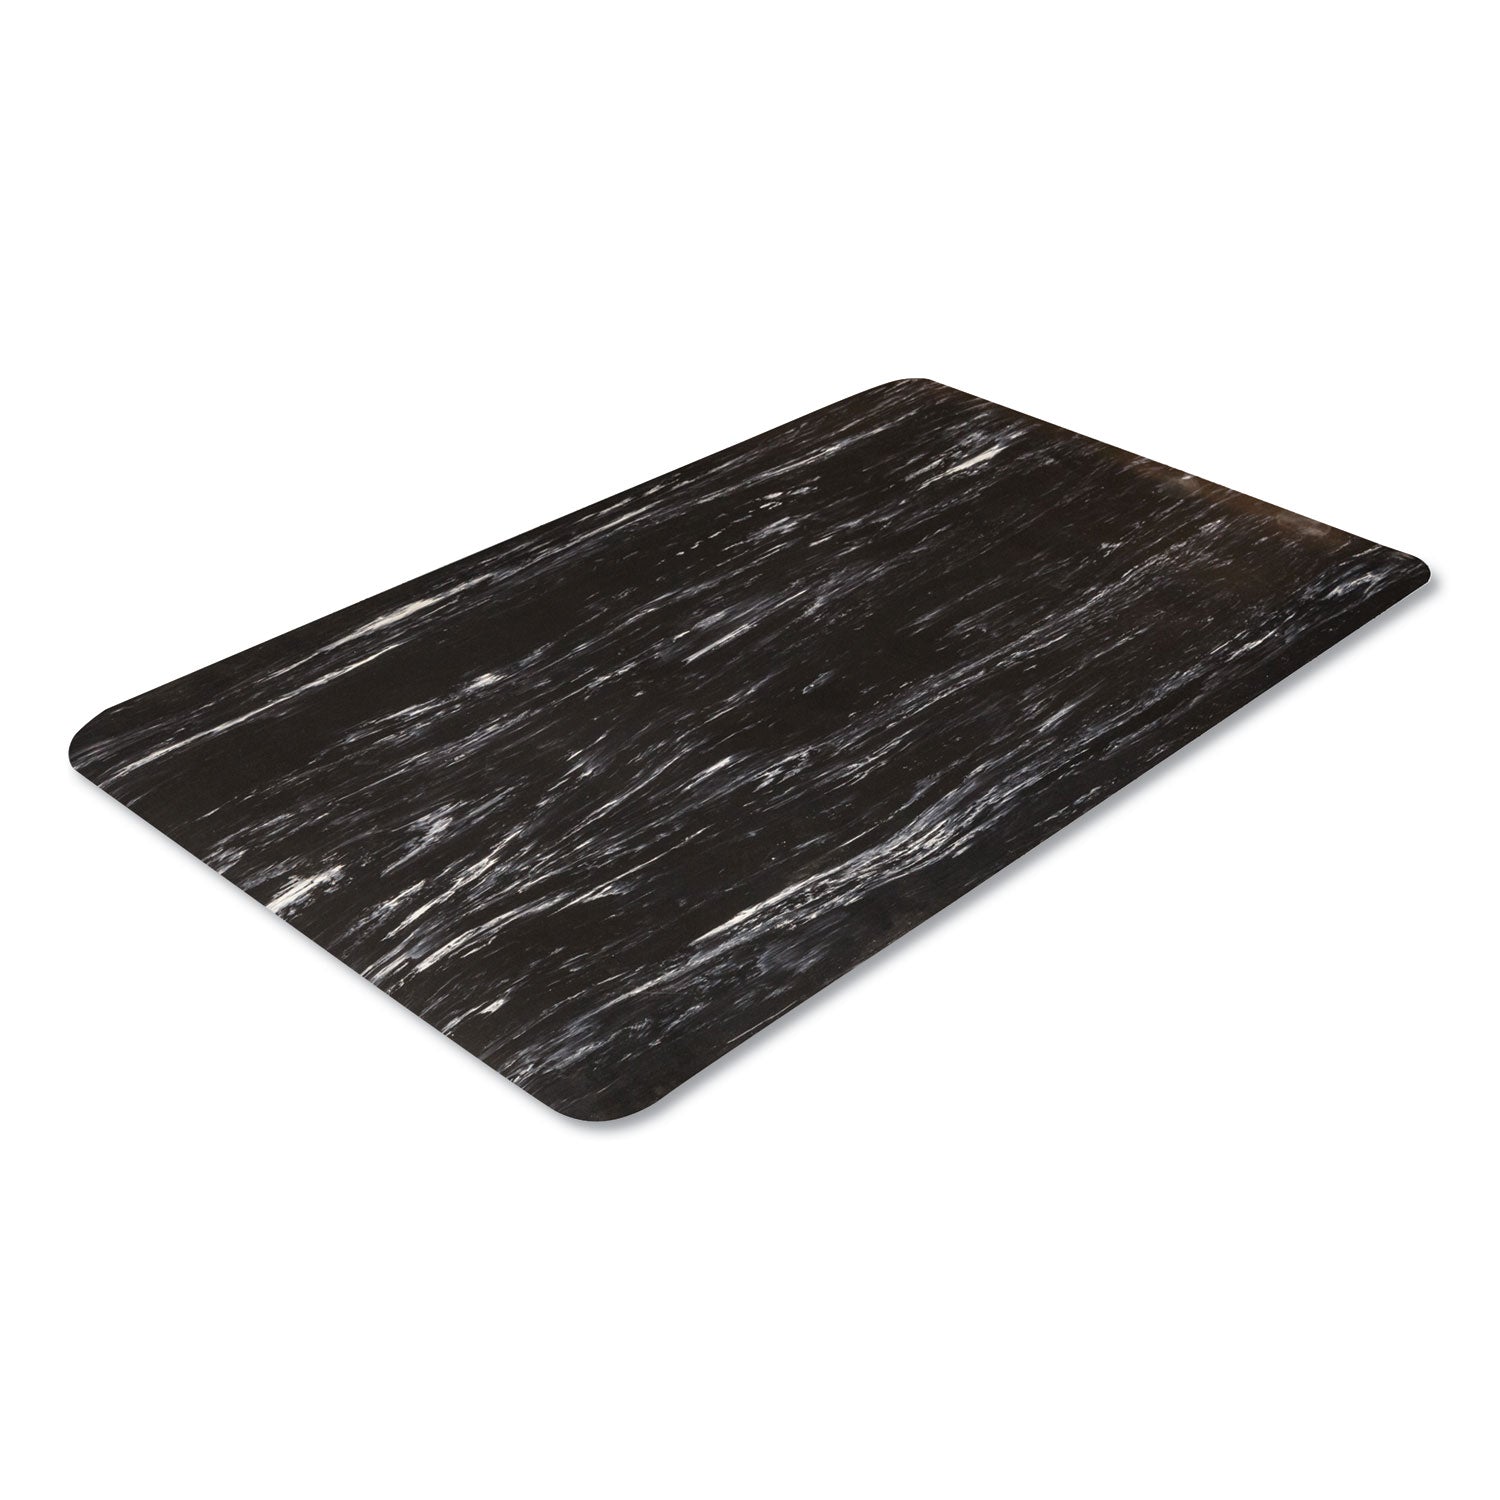 Cushion-Step Marbleized Rubber Mat, 36 x 60, Black - 